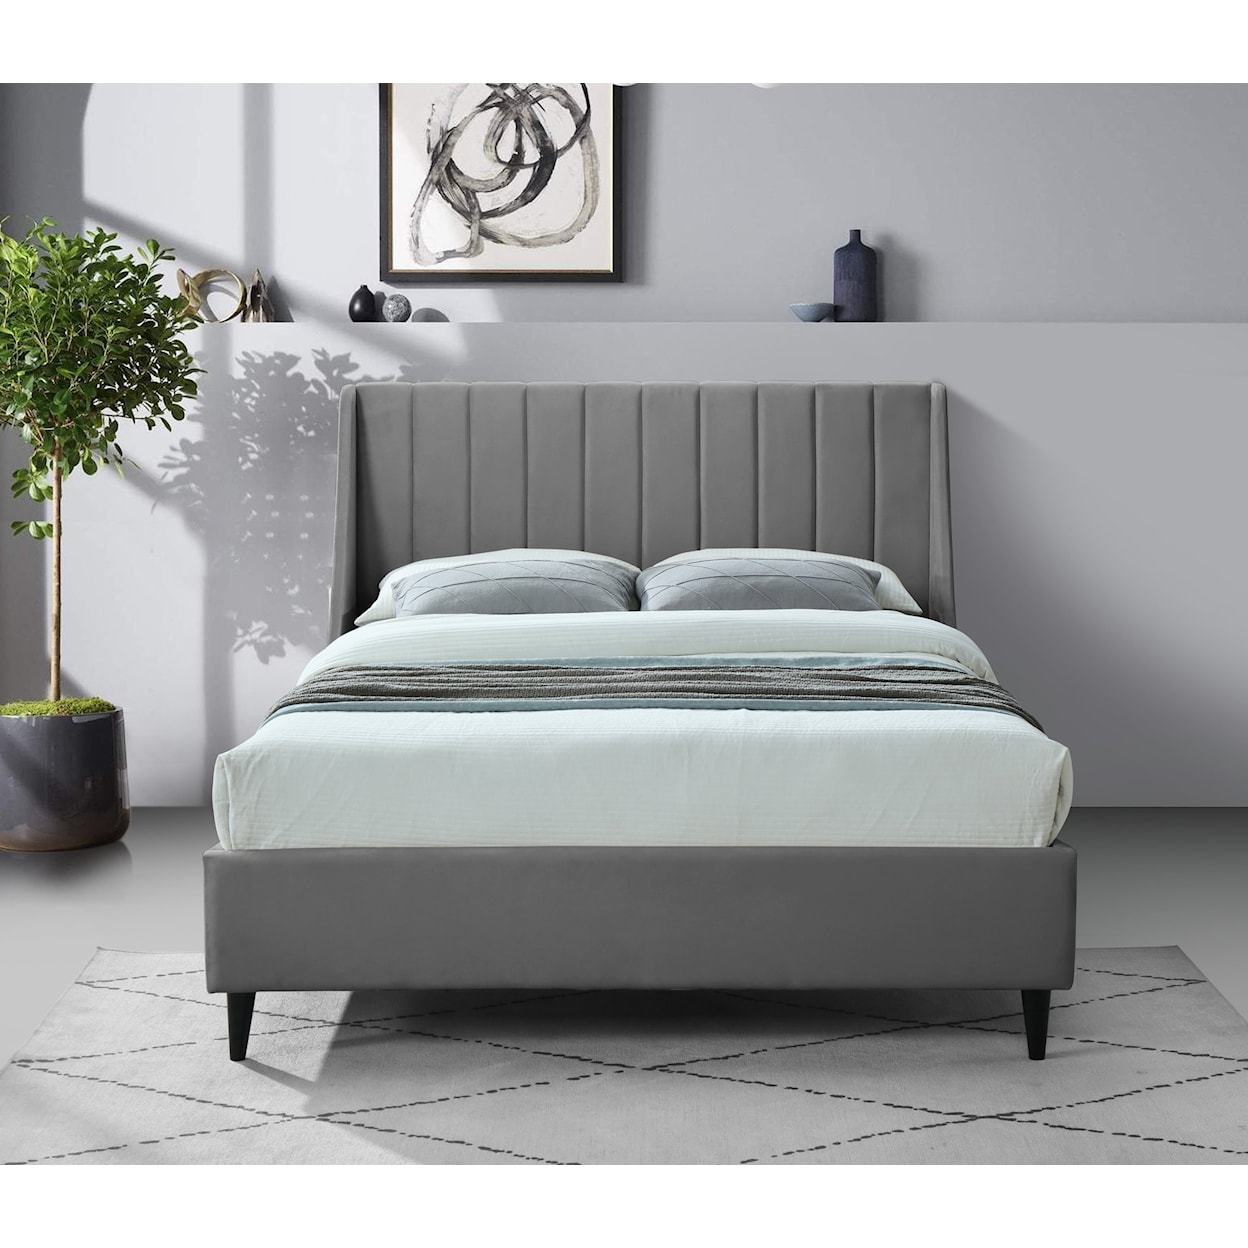 Meridian Furniture Eva Full Bed